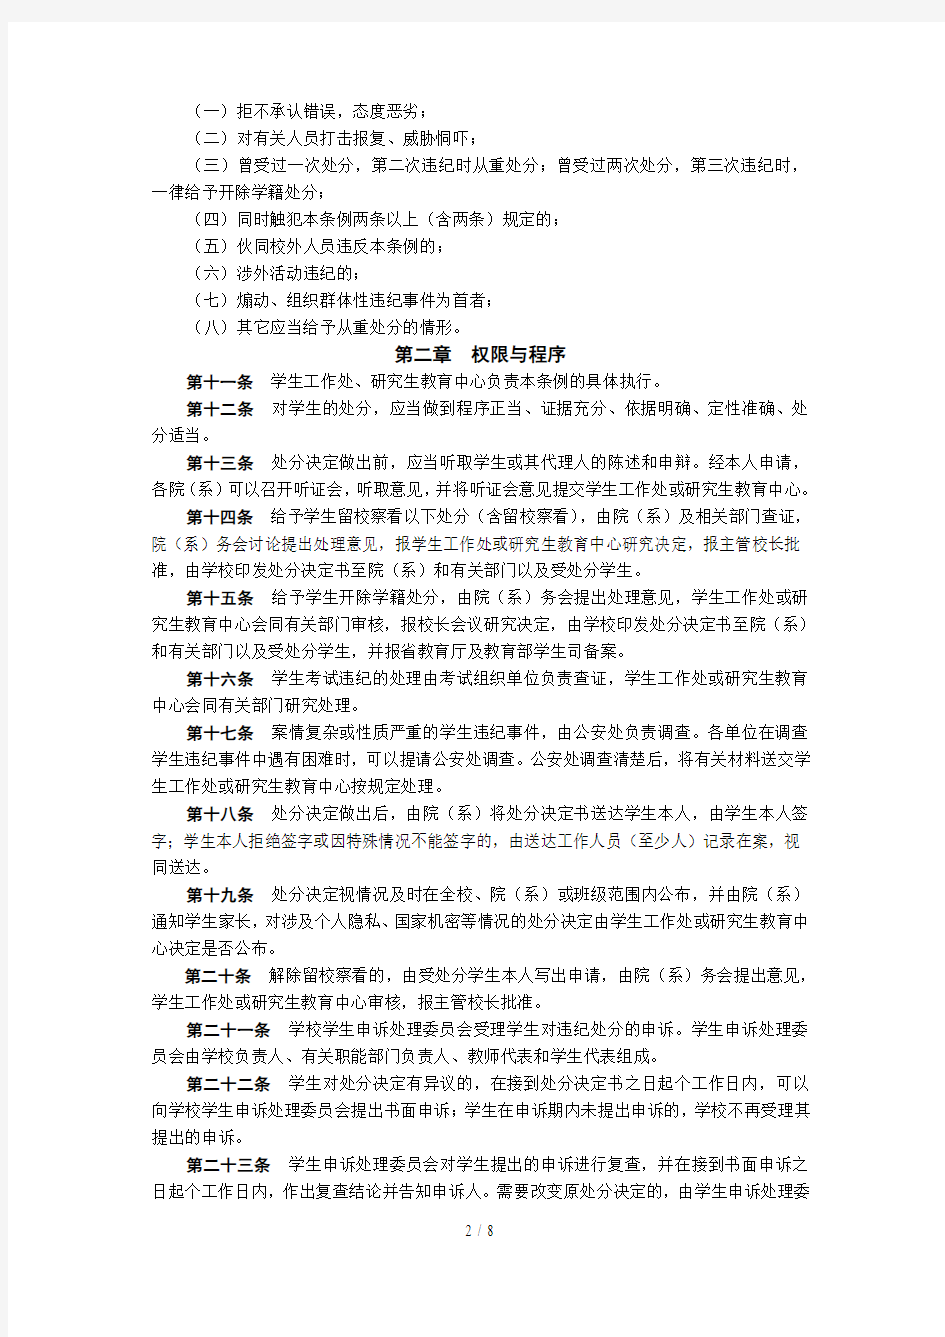 中国海洋大学学生违纪处分条例